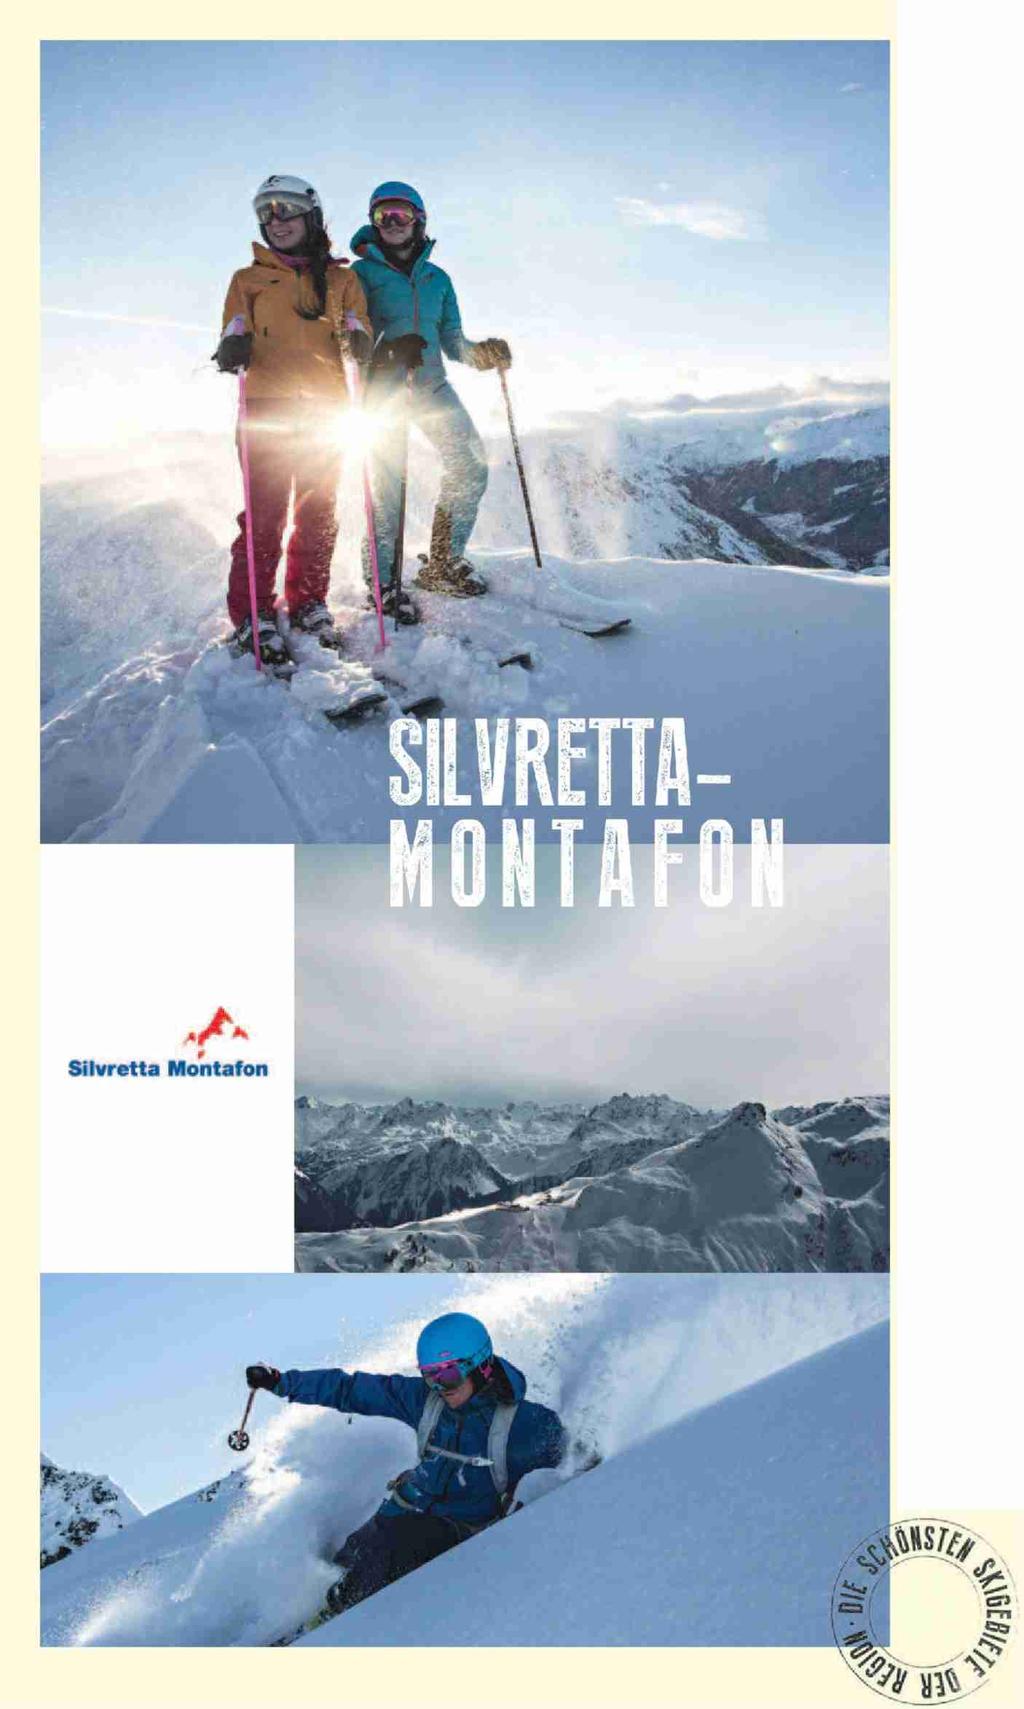 12.2014) Silvretta Montalion -"ggerfal» Pisten: 140 km» Was läuft auf der Piste?